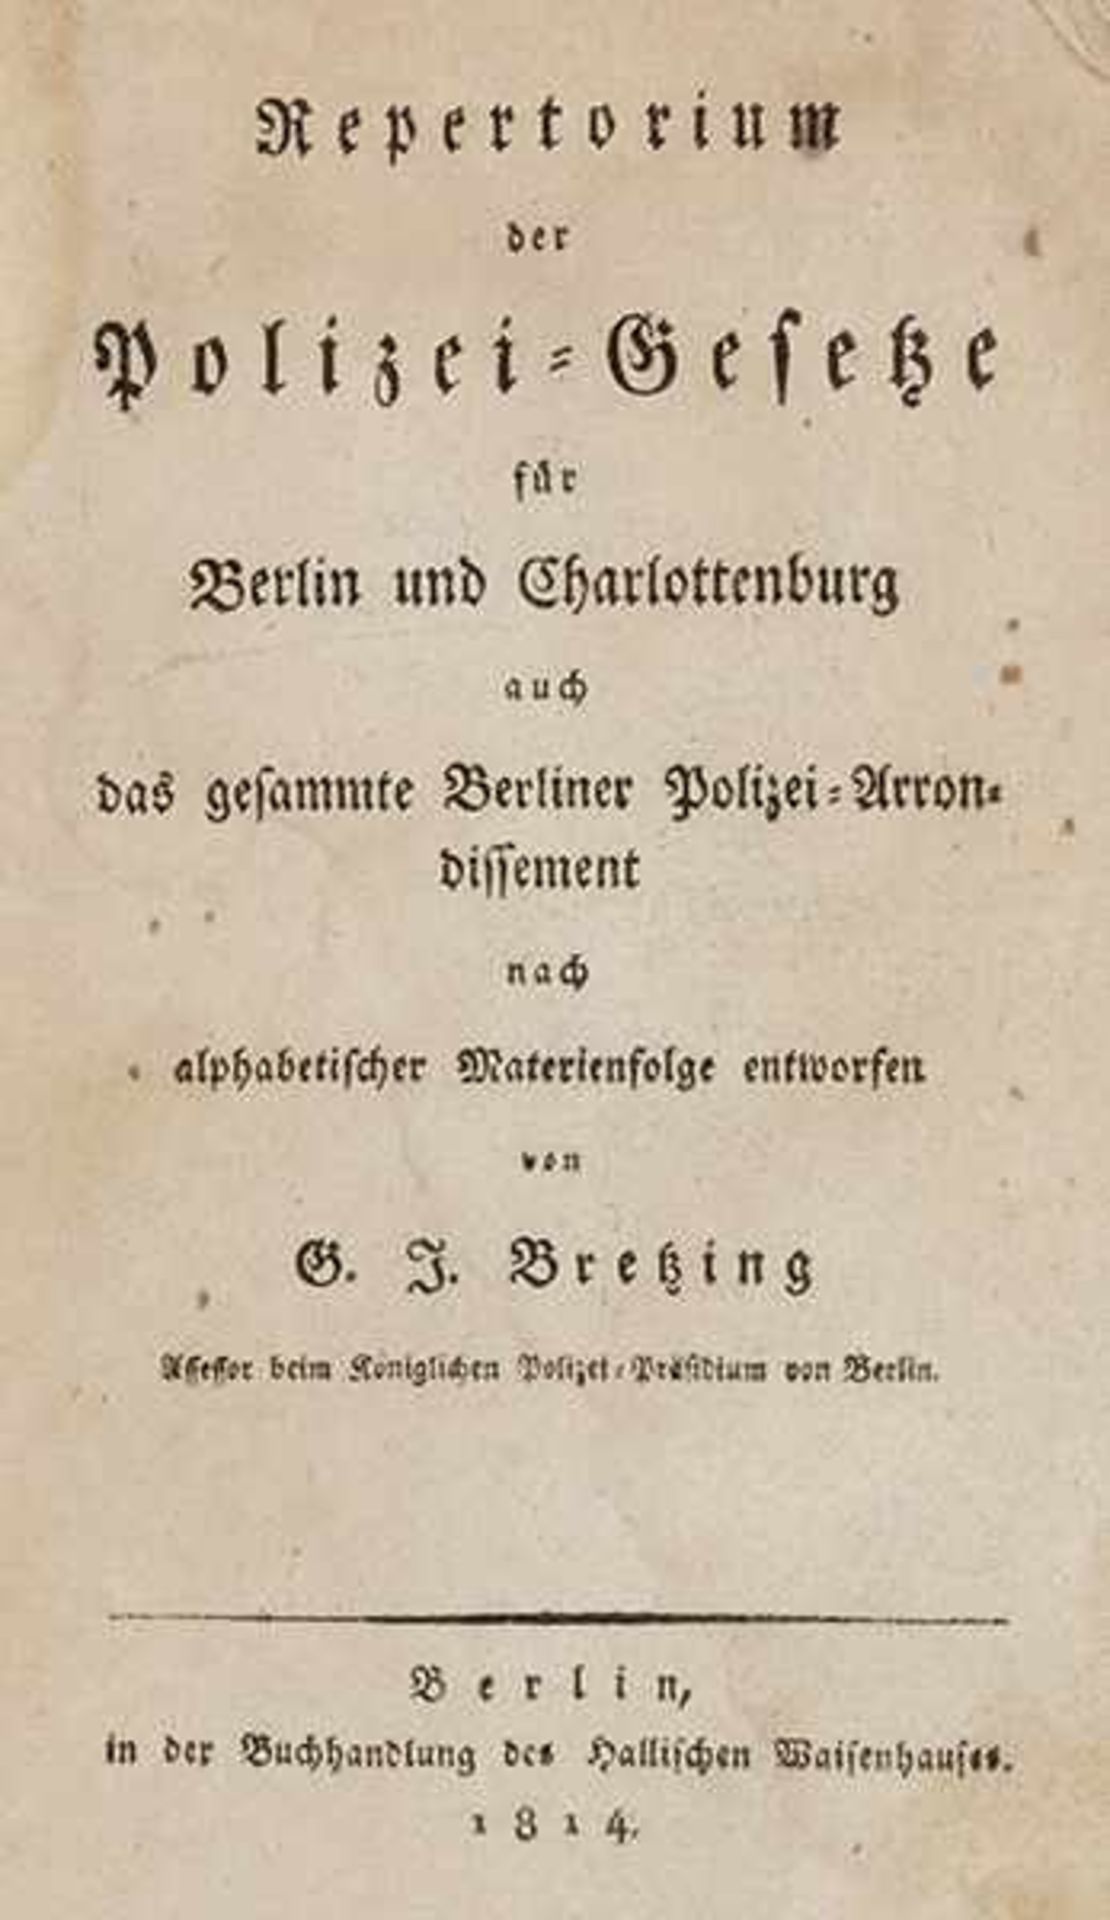 Deutschland - Berlin - - Bretzing, Georg Isaac. Repertorium der Polizei-Gesetze für Berlin und